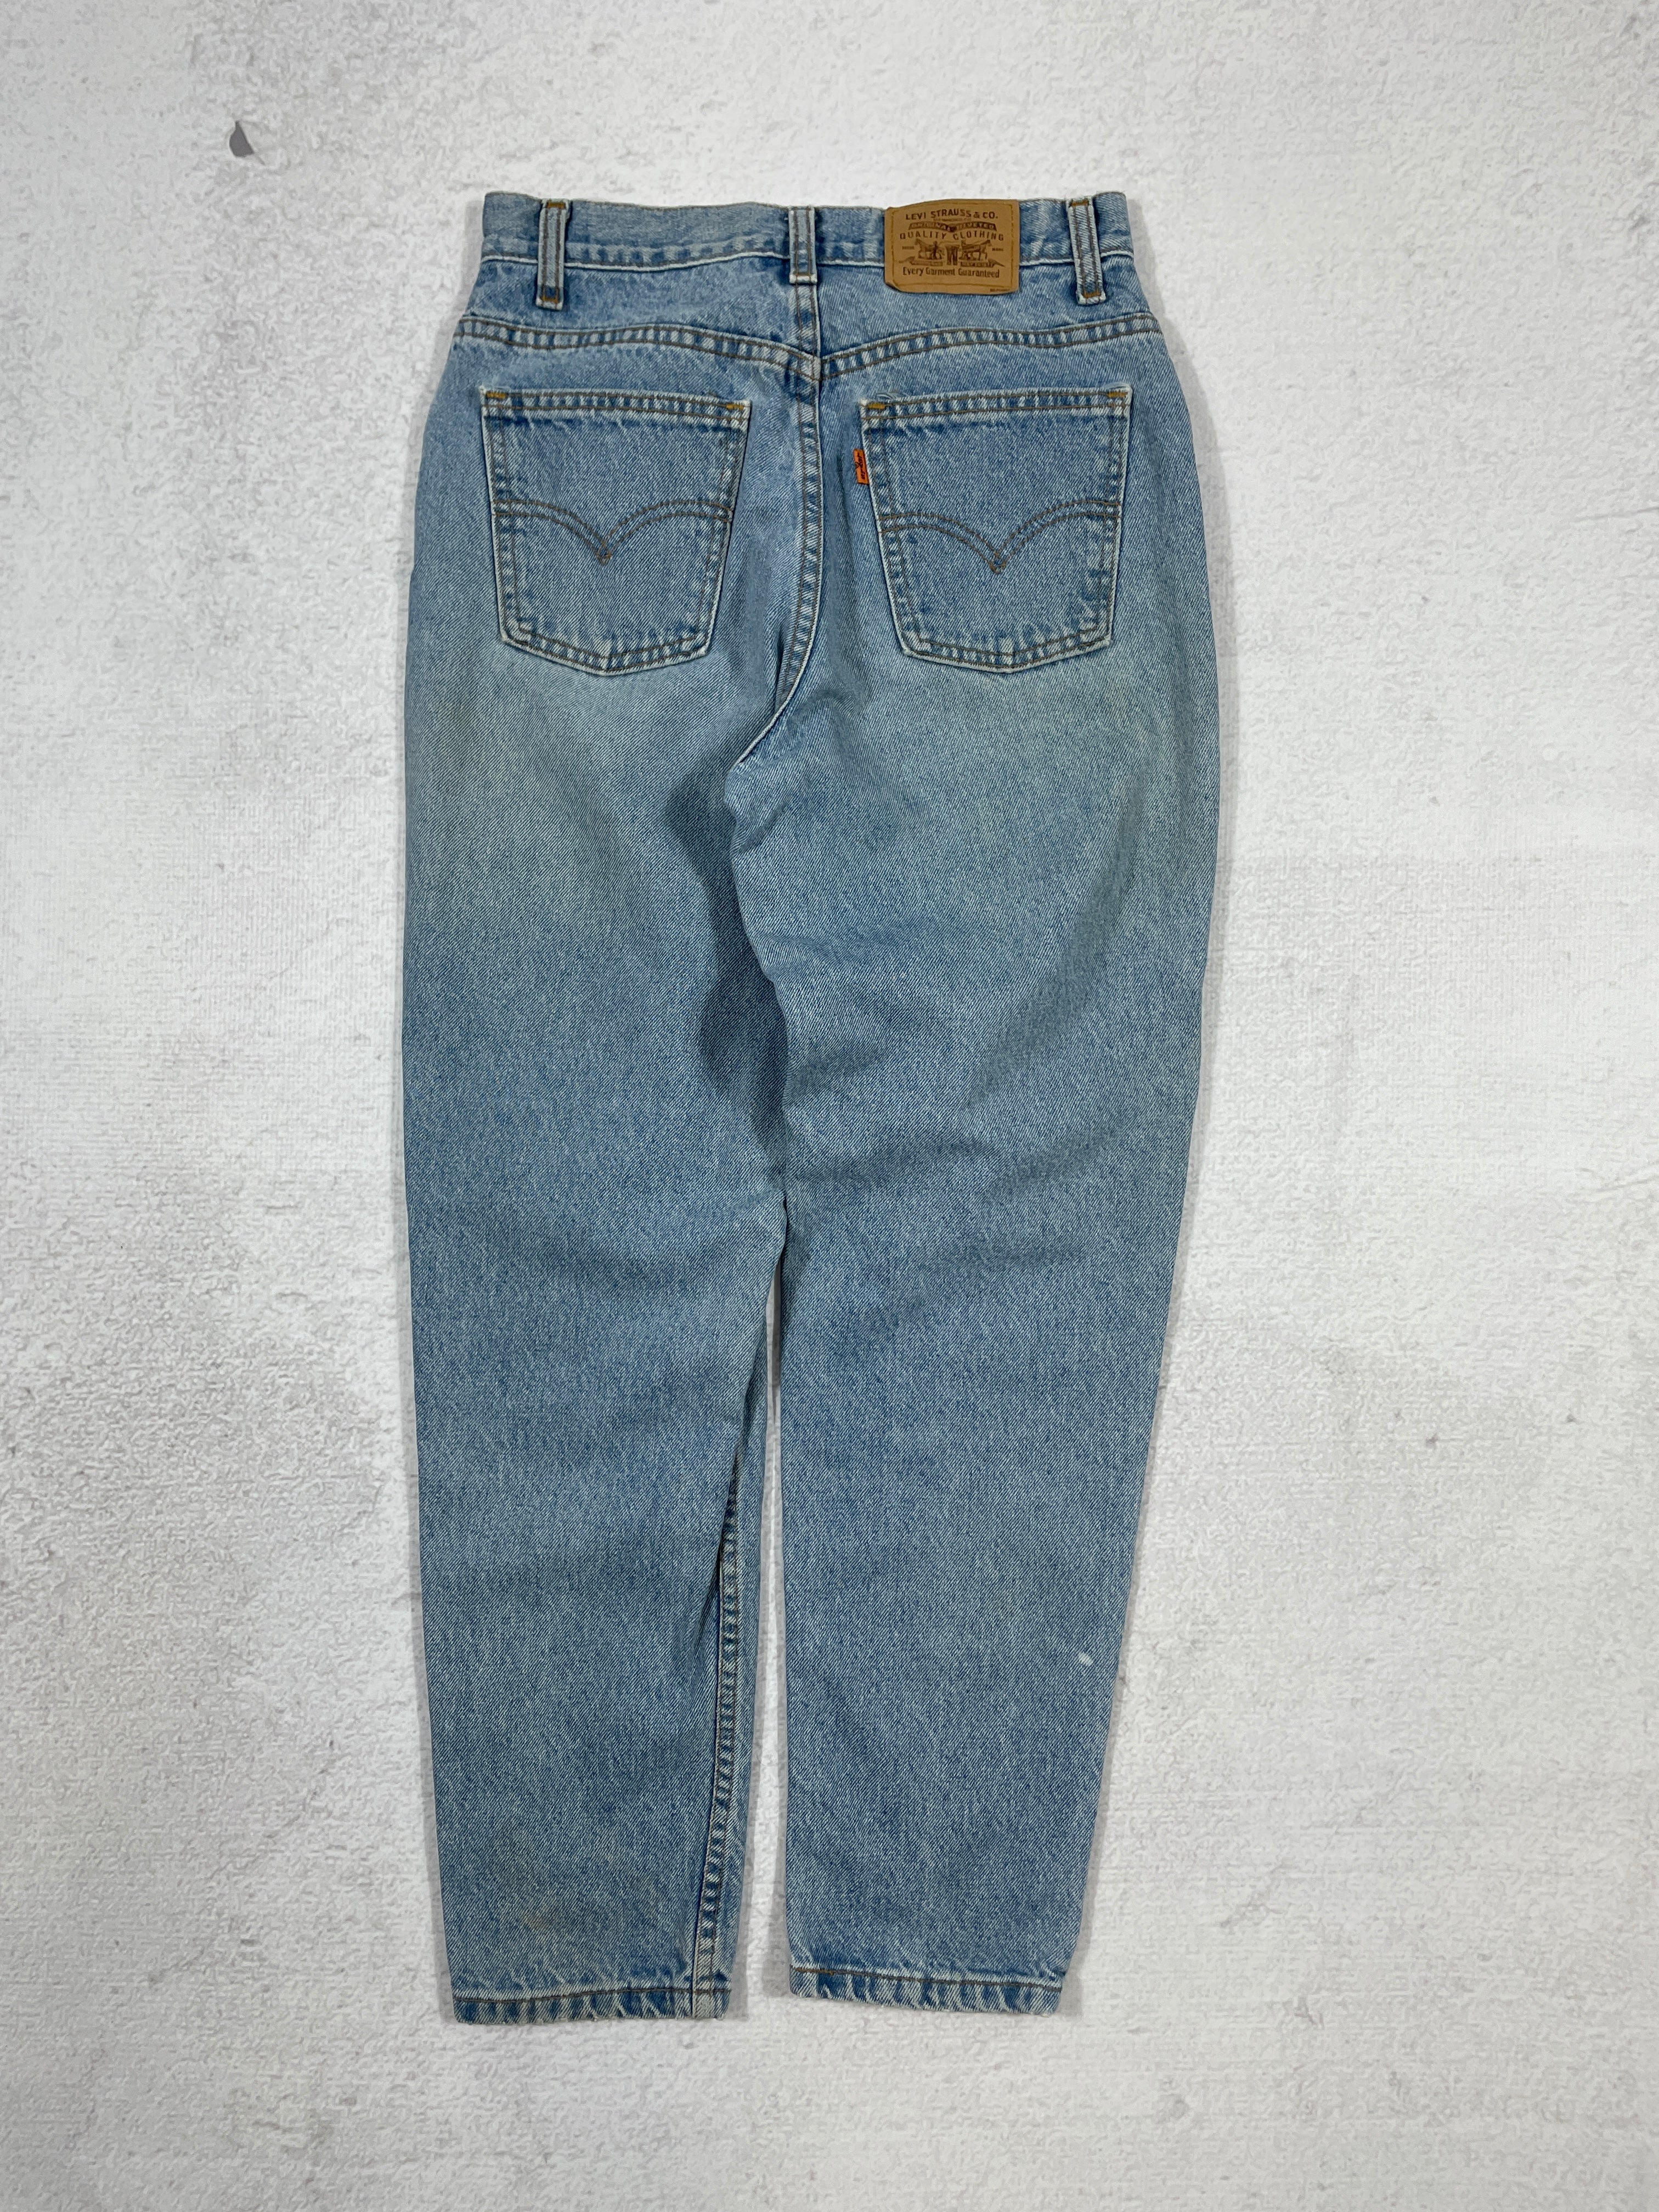 Vintage Levis Orange Tab Jeans - Women's 26Wx28L